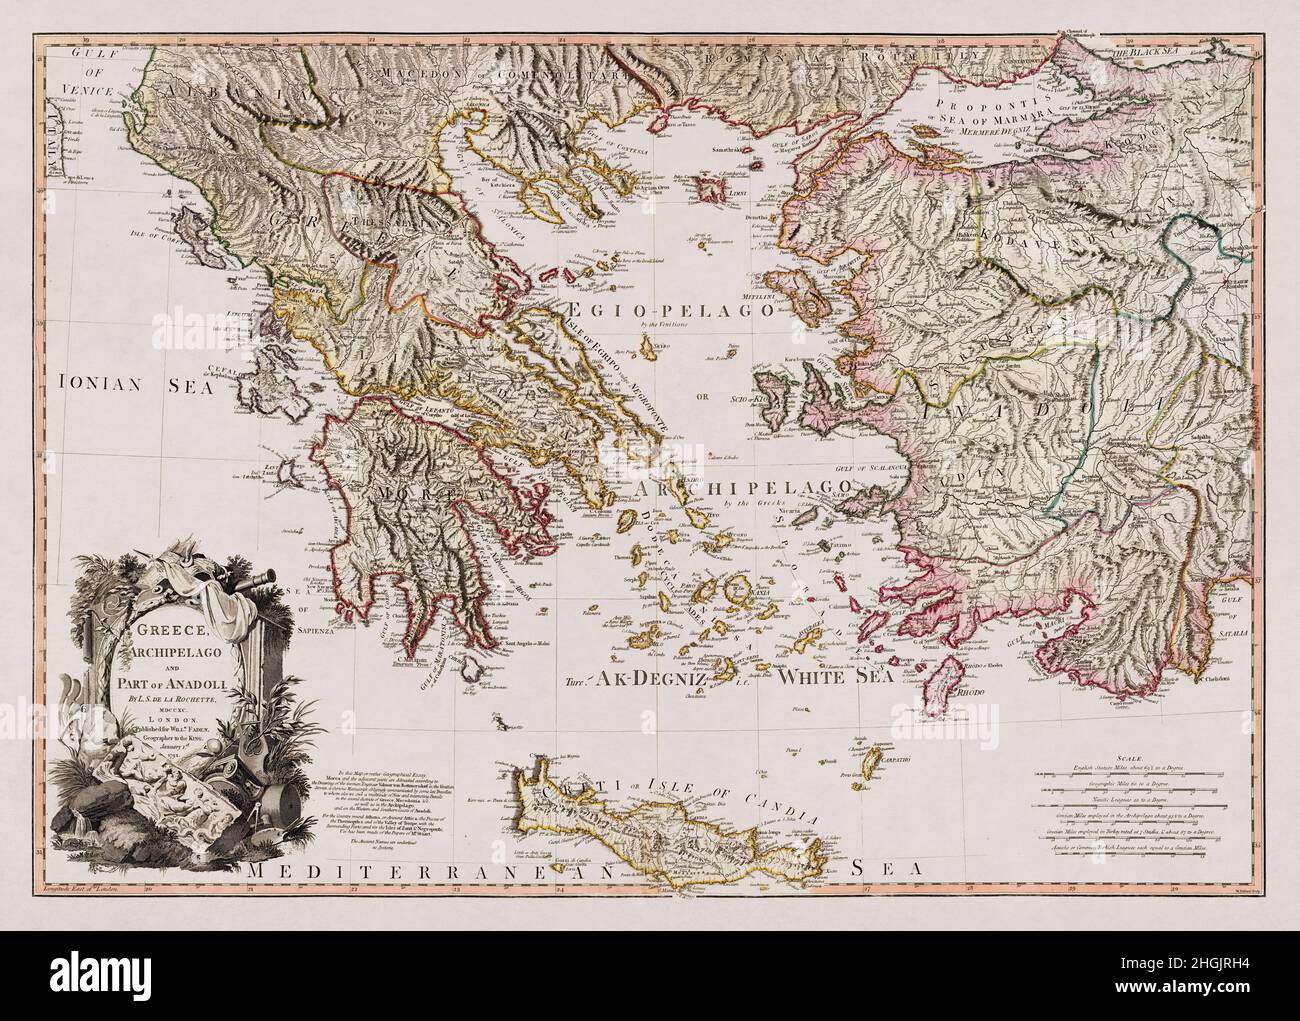 Mappa della Grecia, è arcipelago e parte di Anadoli disegnata da Louis Stanislas d'Arcy Delarochette nel 1791. Foto Stock